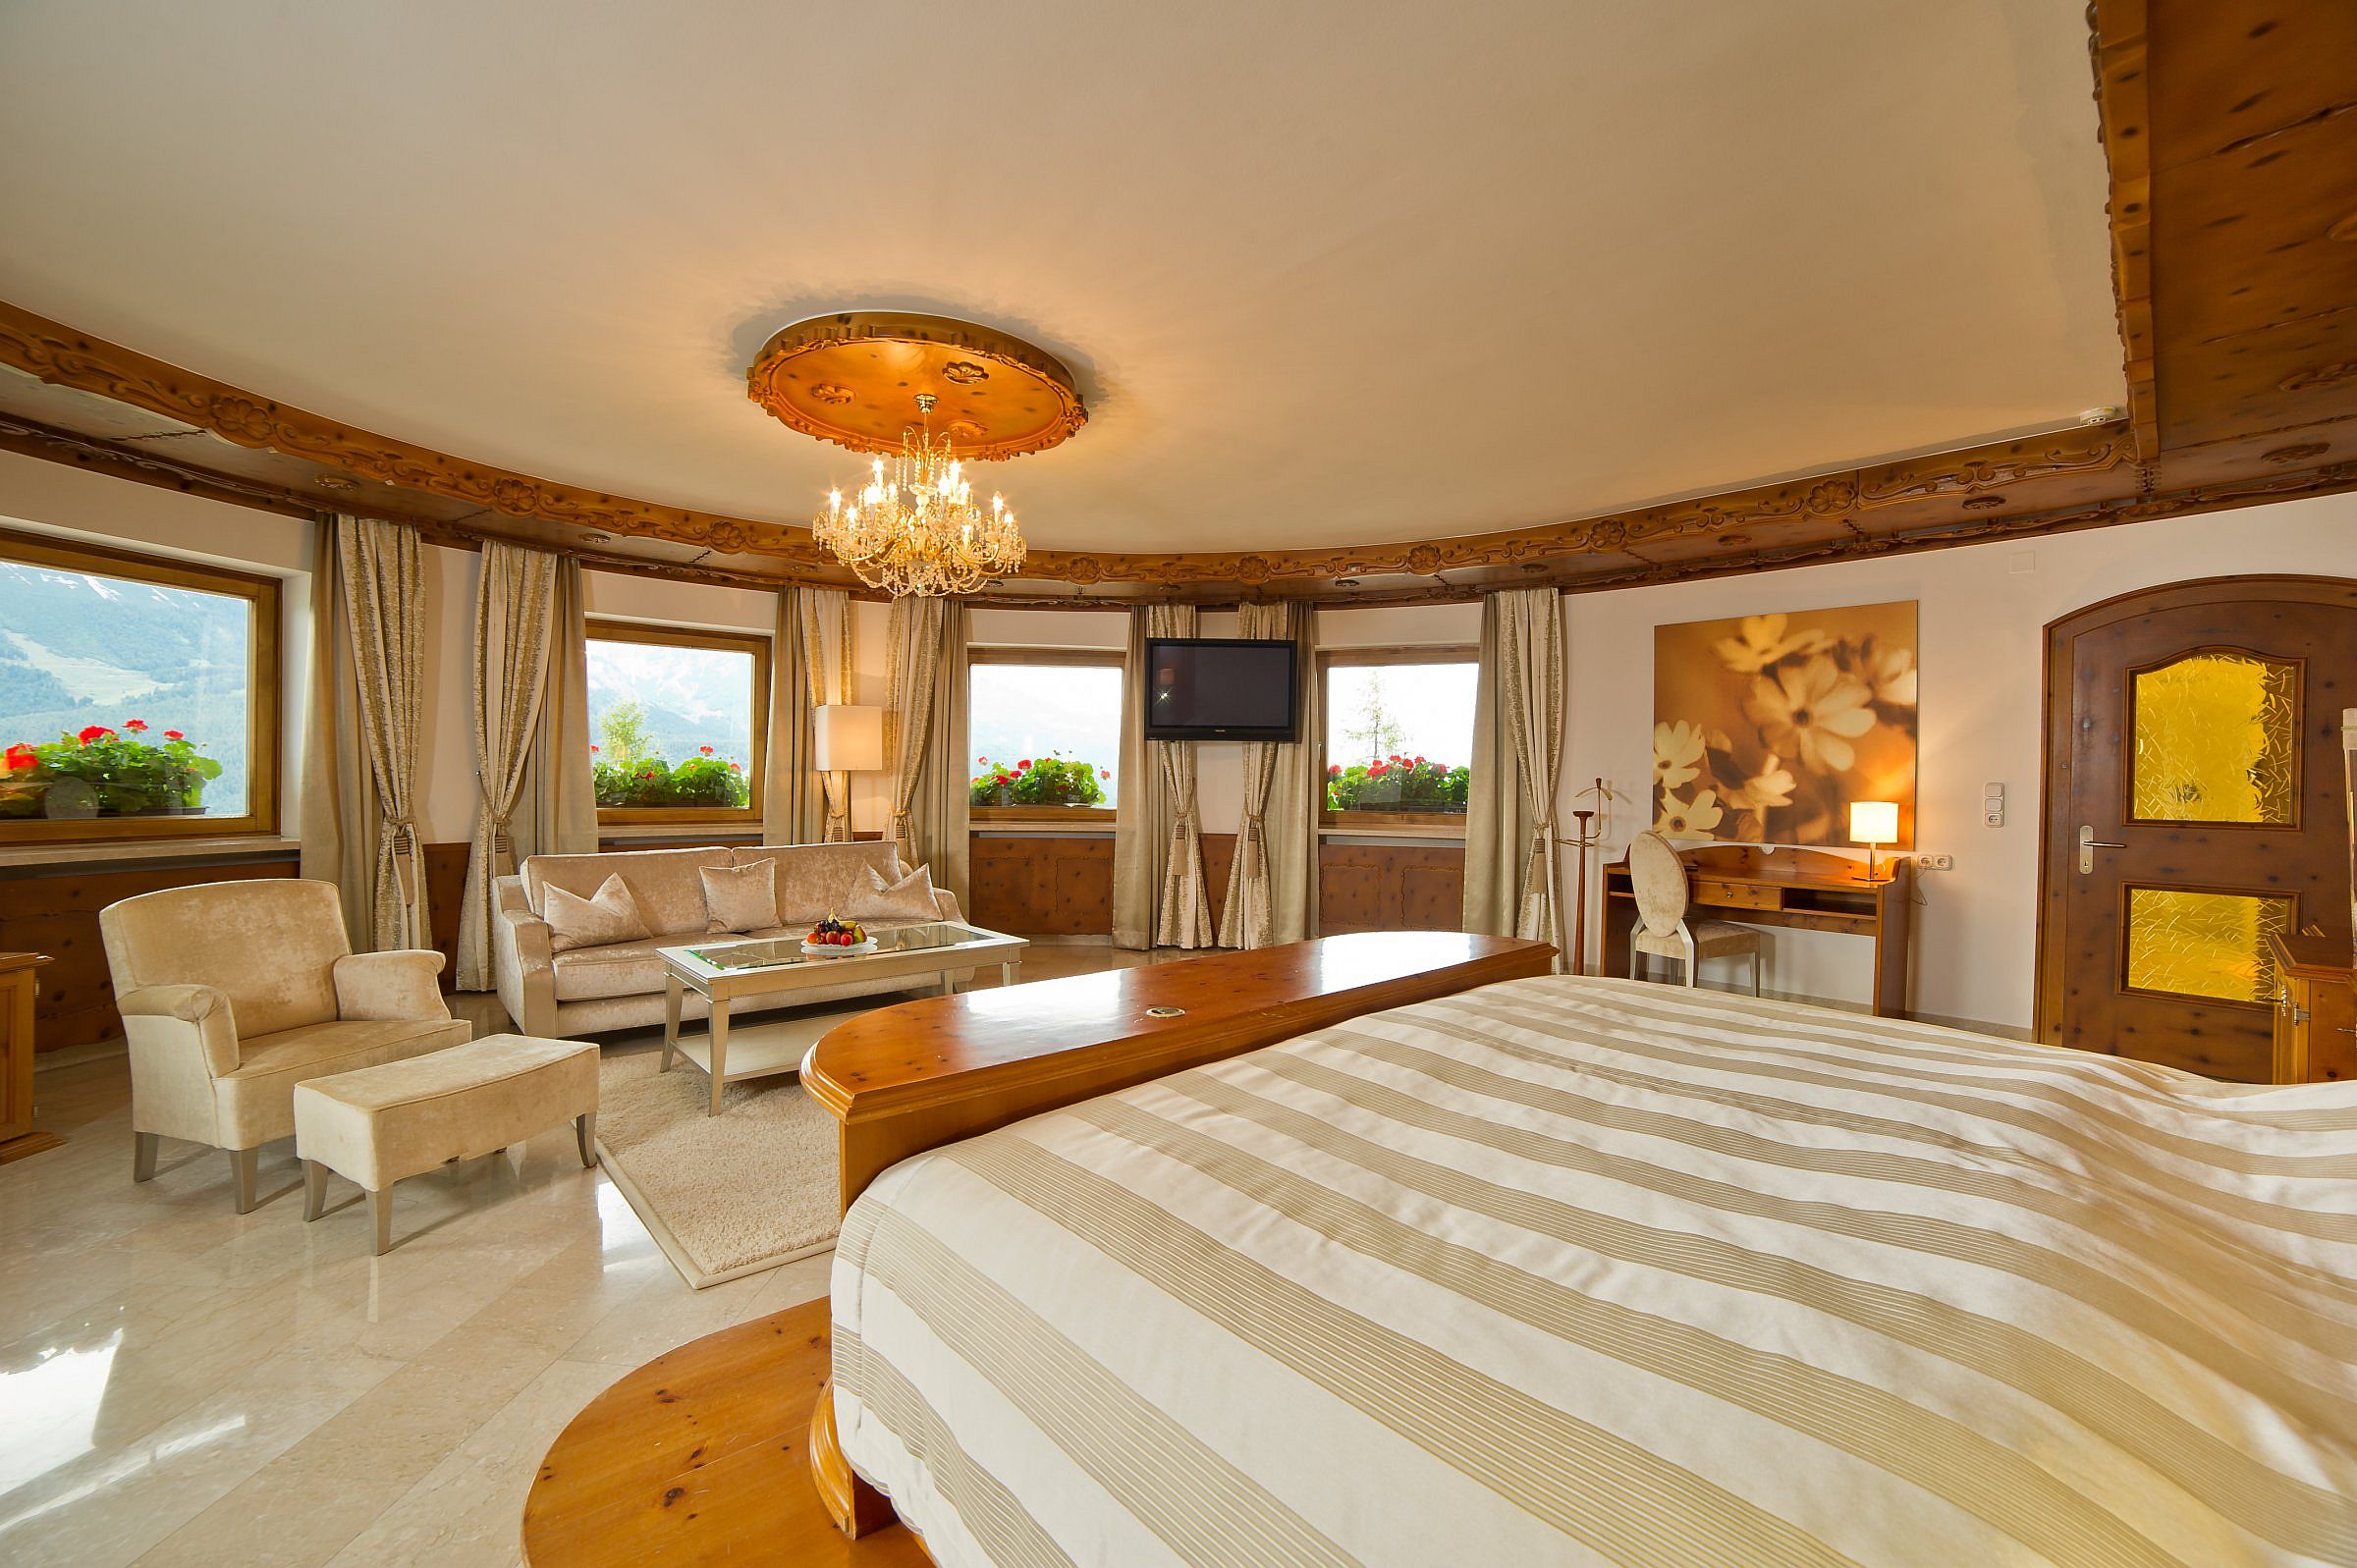 Luxurious rooms inside Kaiserhof Hotel